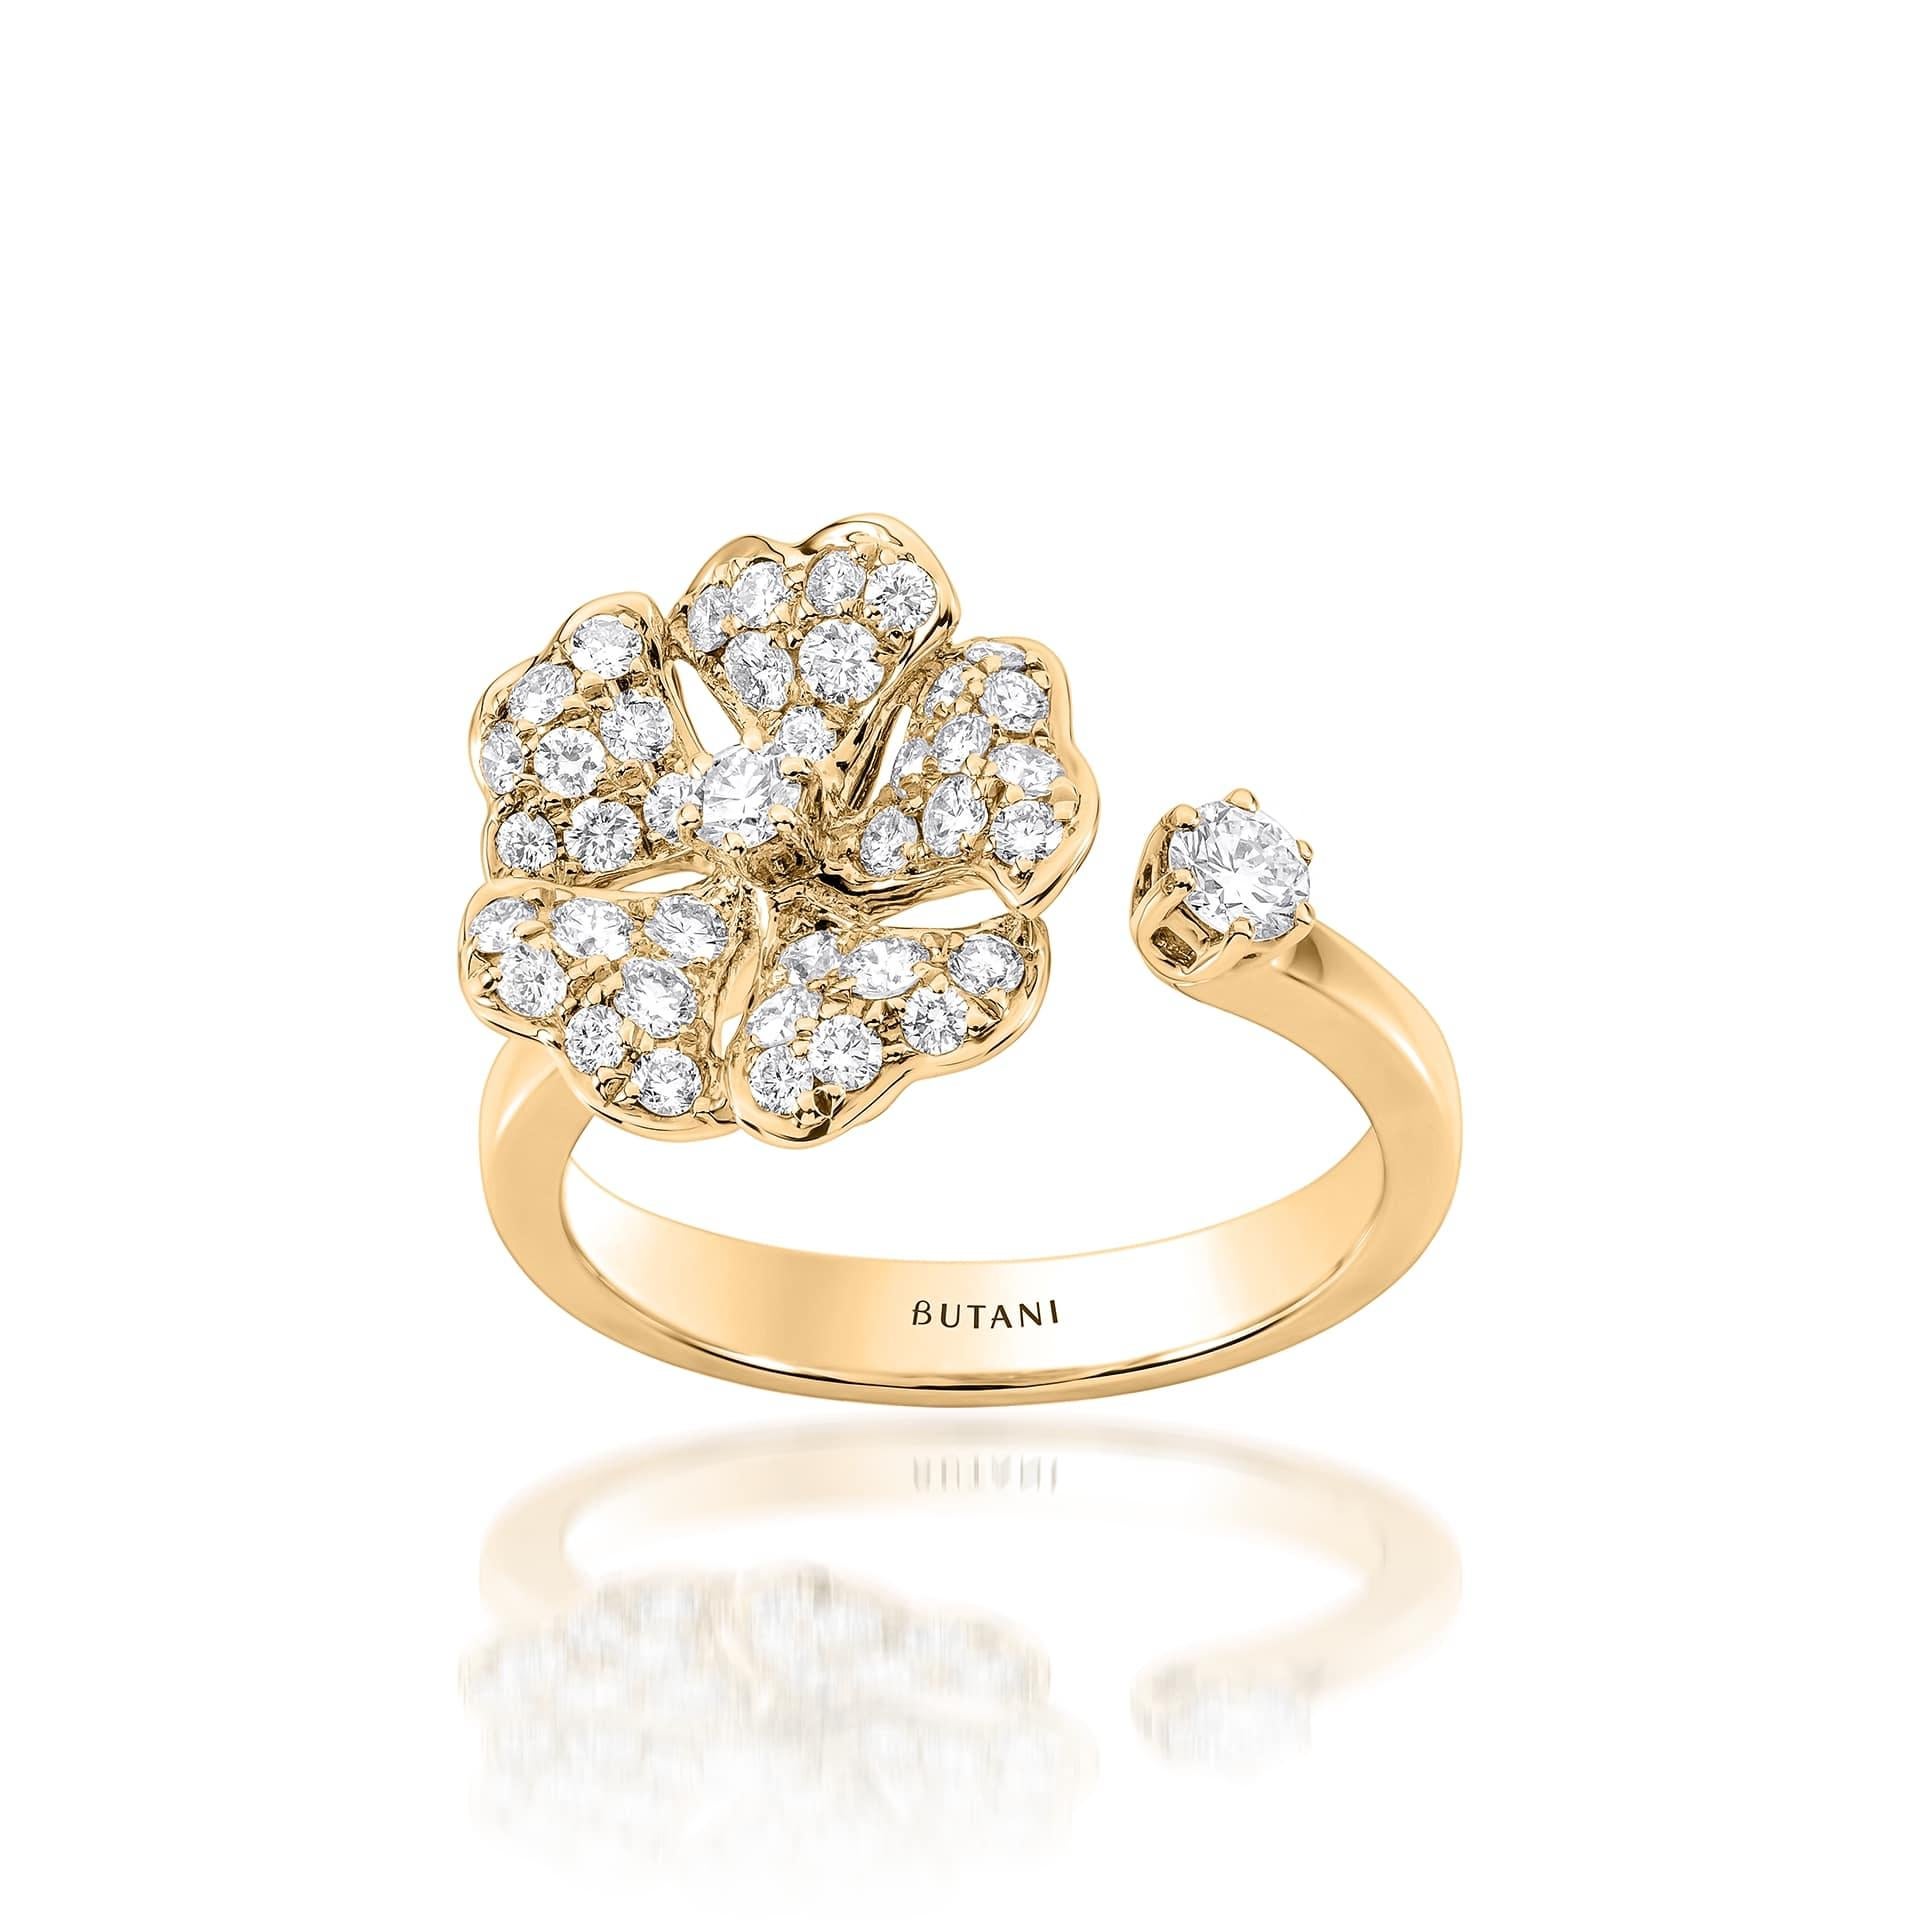 Bloom Gold und Pavé-Diamant Offener Ring aus 18K Gelbgold

Inspiriert von den exquisiten Blütenblättern des alpinen Fingerkrauts, verbindet die Kollektion Bloom den Reichtum von Diamanten und Edelmetallen mit der leichten Vielseitigkeit dieser